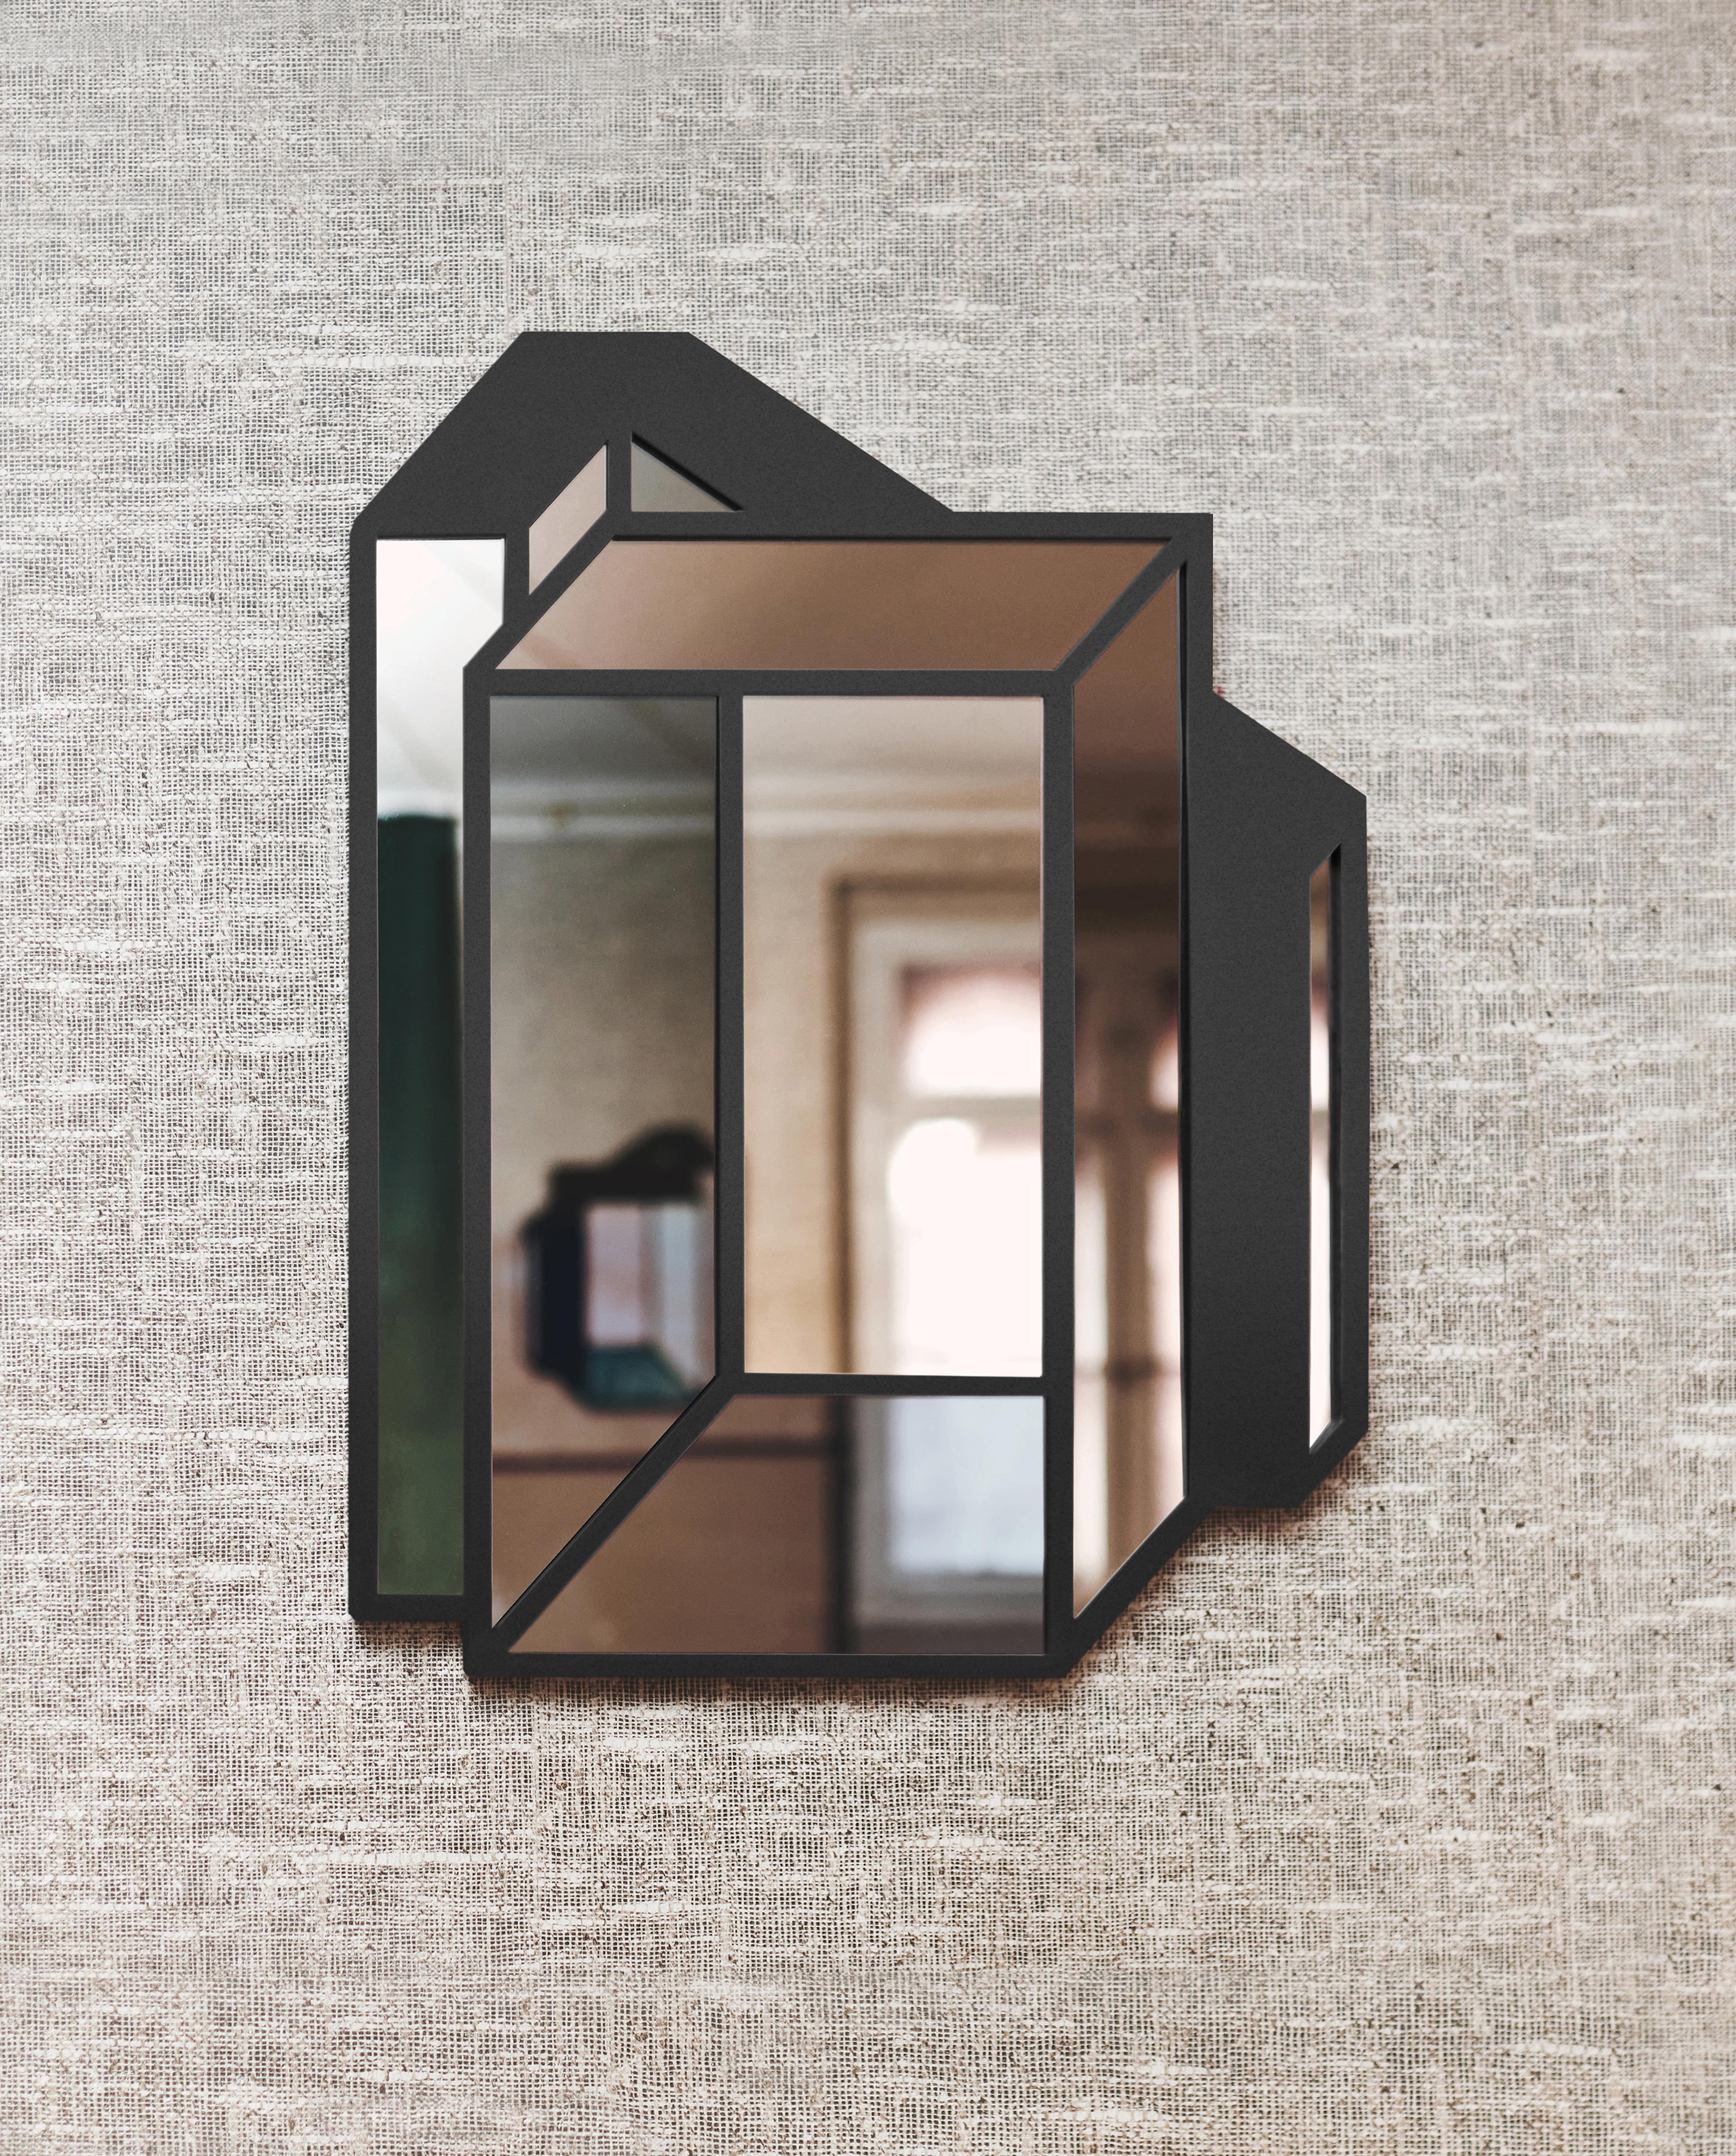 Spiegelobjekt Nr. 2 von Dechem Studio.
Abmessungen: T 53 x H 70 cm.
MATERIAL: Glas, Metall.

Axonometrische, an der Wand befestigte Spiegel als Symbol der Vergänglichkeit und des Vergänglichen übersetzen die dreidimensionalen Beziehungen in eine